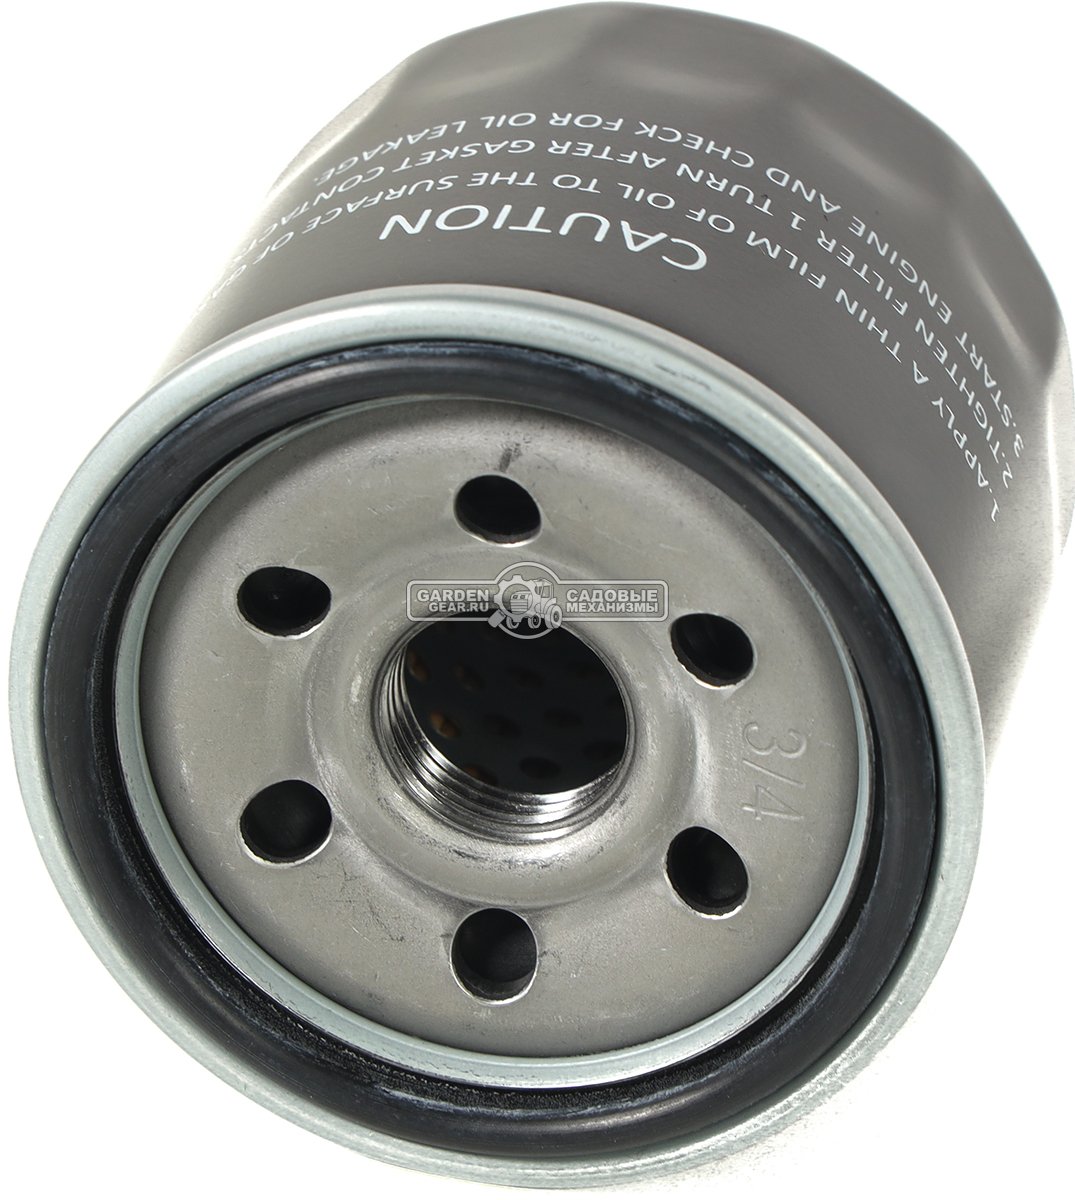 Фильтр масляный Loncin 150350046 / 3b23 для двигателя LC1P96F / LC2P82F (аналог MTD 751-12690, Al-ko 418138)